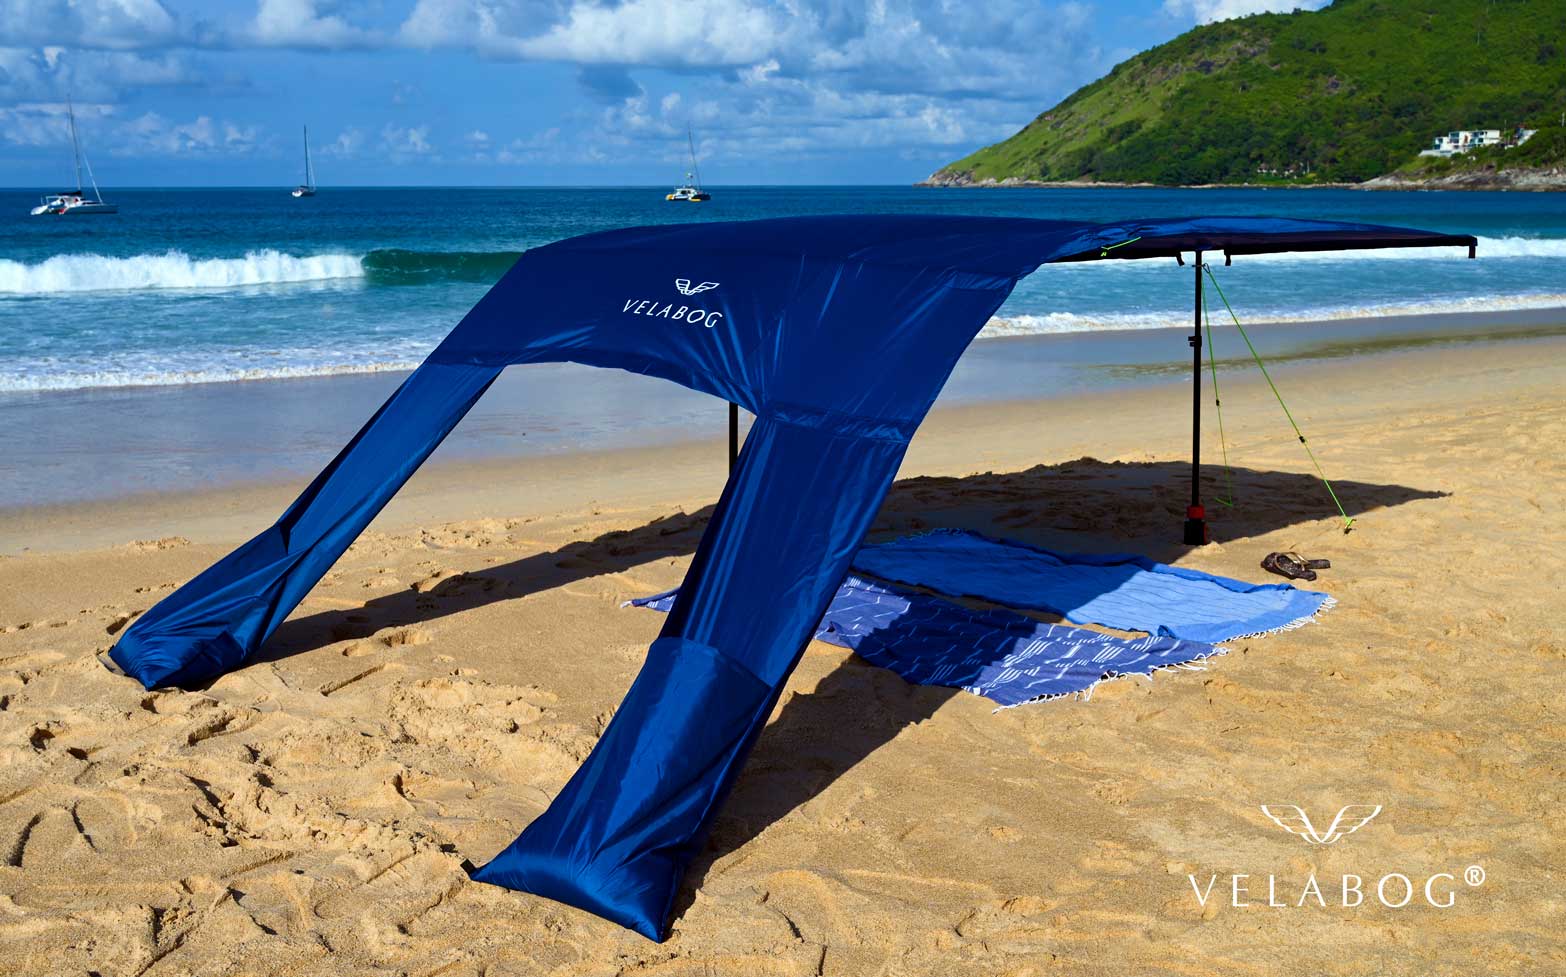 Voile d’ombrage tente plage Velabog Breeze, bleu nuit. Excellente résistance au vent par rapport aux parasols et tentes de plage. Le meilleur auvent de plage. Option de montage avec le kit d’extension quand il n’y a pas de vent, par vents faibles ou en rafales. Vue latérale.